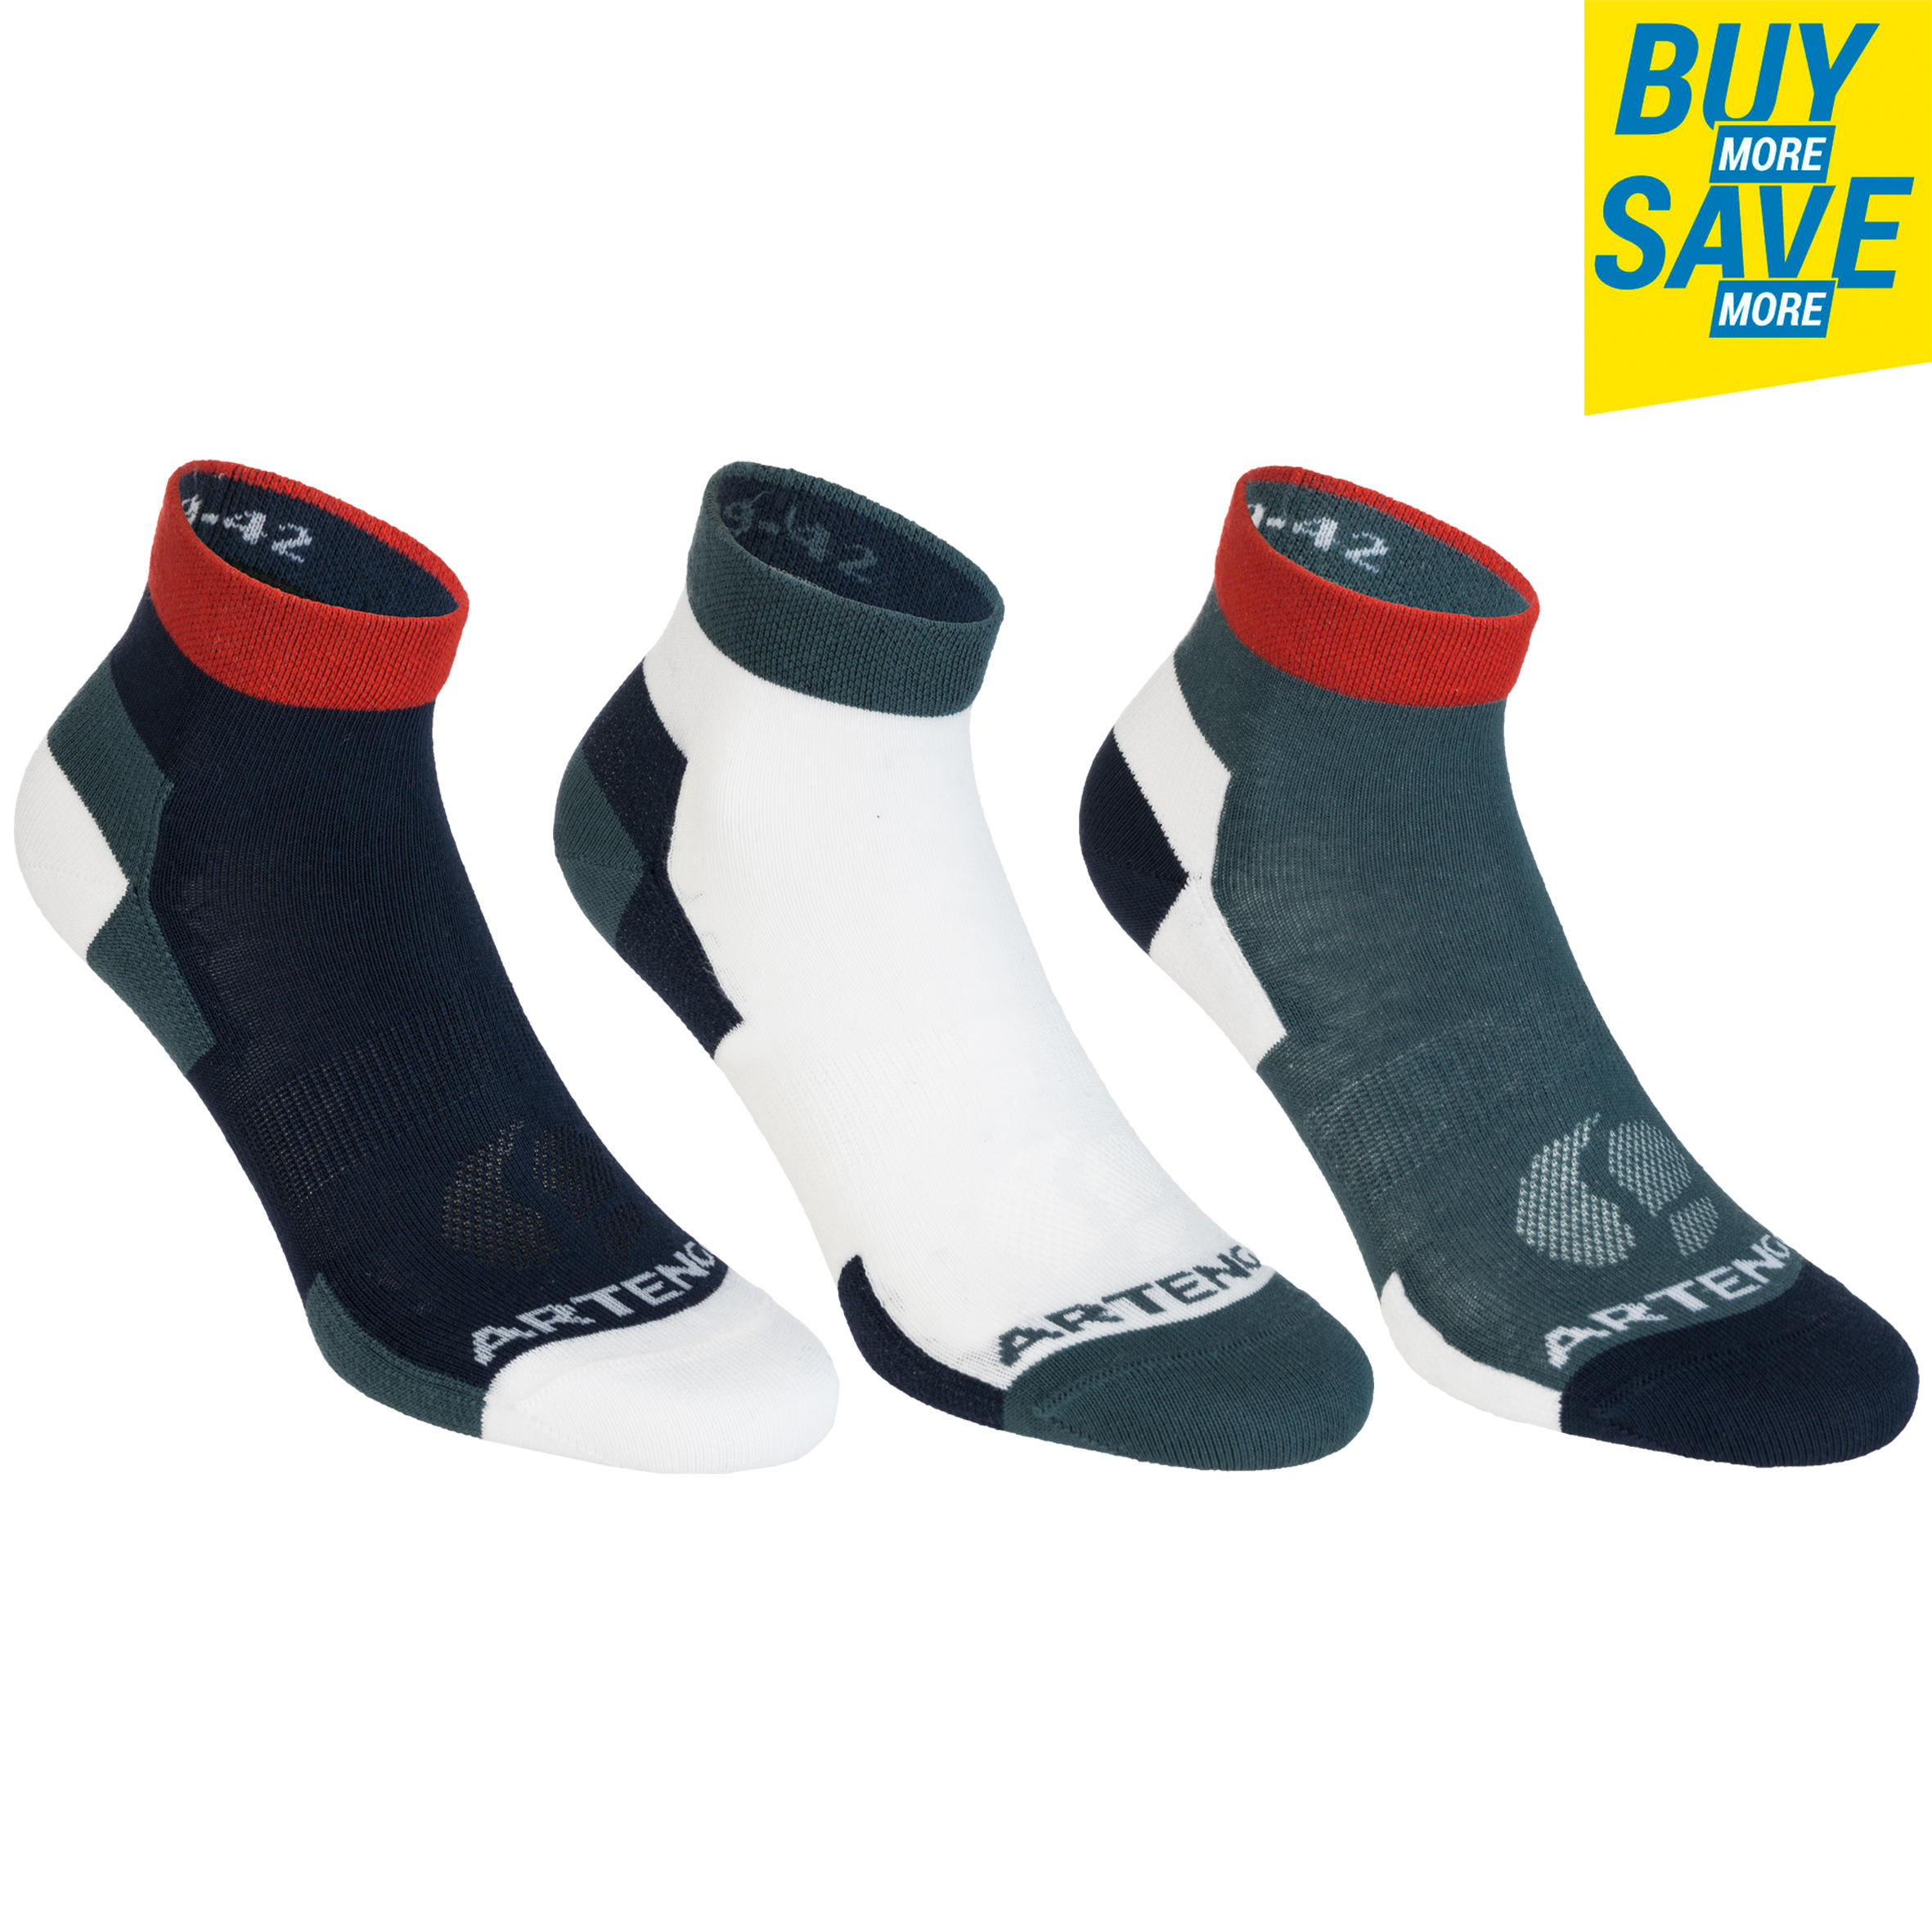 Womens Socks - Socks for Women Buy 